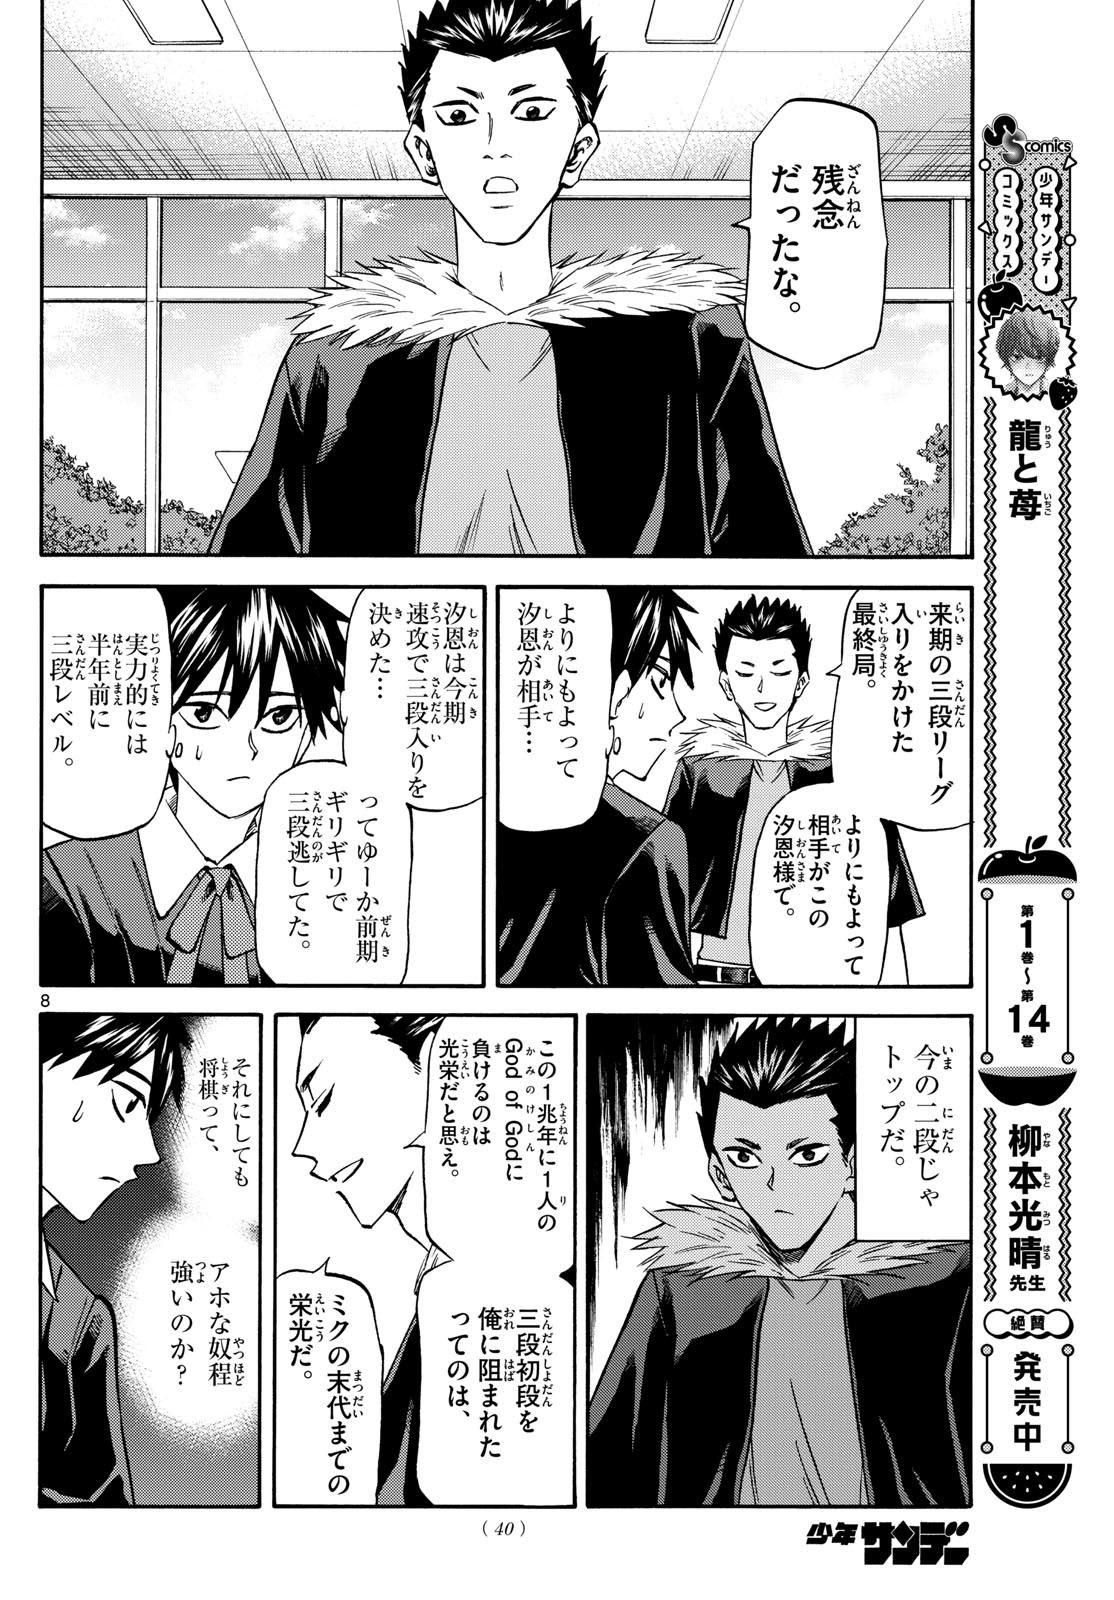 Ryu-to-Ichigo - Chapter 181 - Page 8